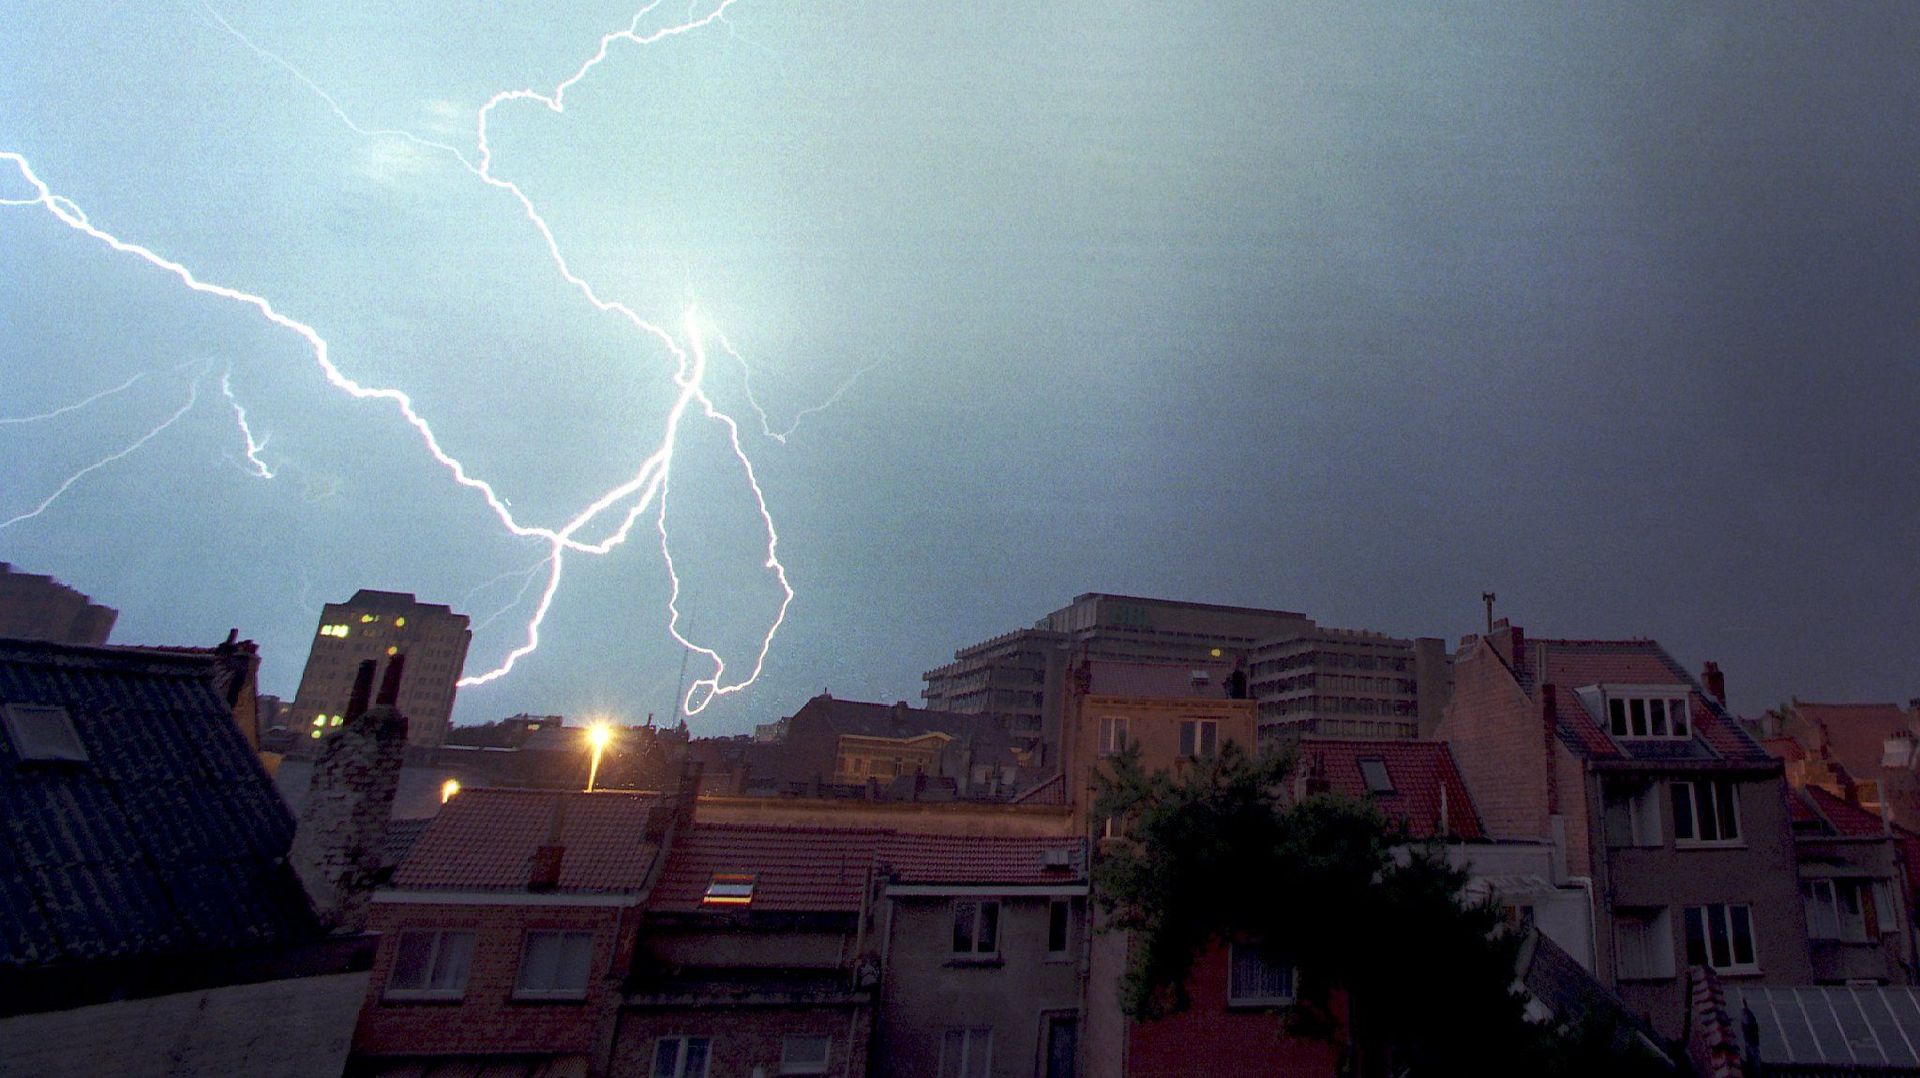 Cette image impressionnante d’orage au-dessus d’Etterbeek date de 1997. Cette nuit, les éclairs et pluies qui se sont abattus sur Bruxelles n’ont fait que peu de dégâts.